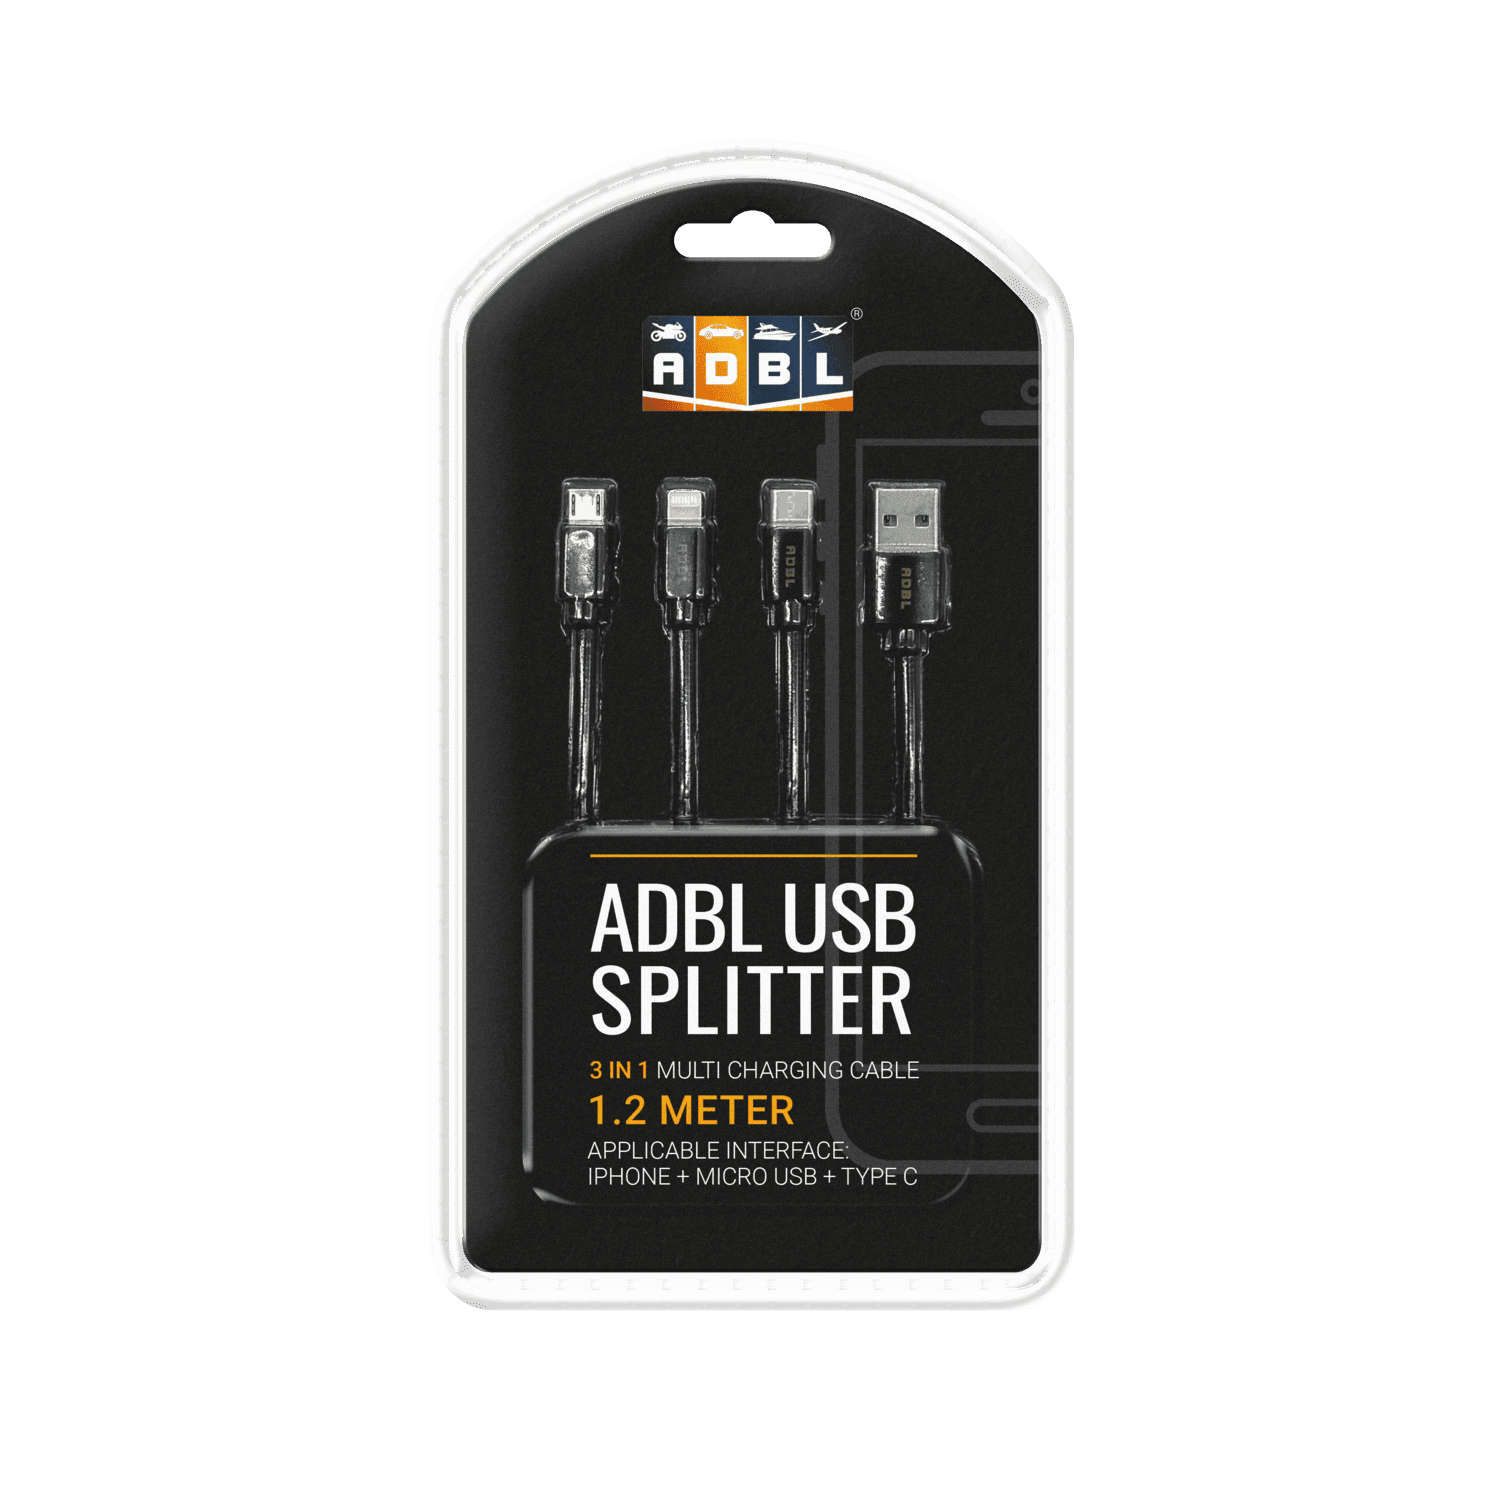 ADBL USB Splitter